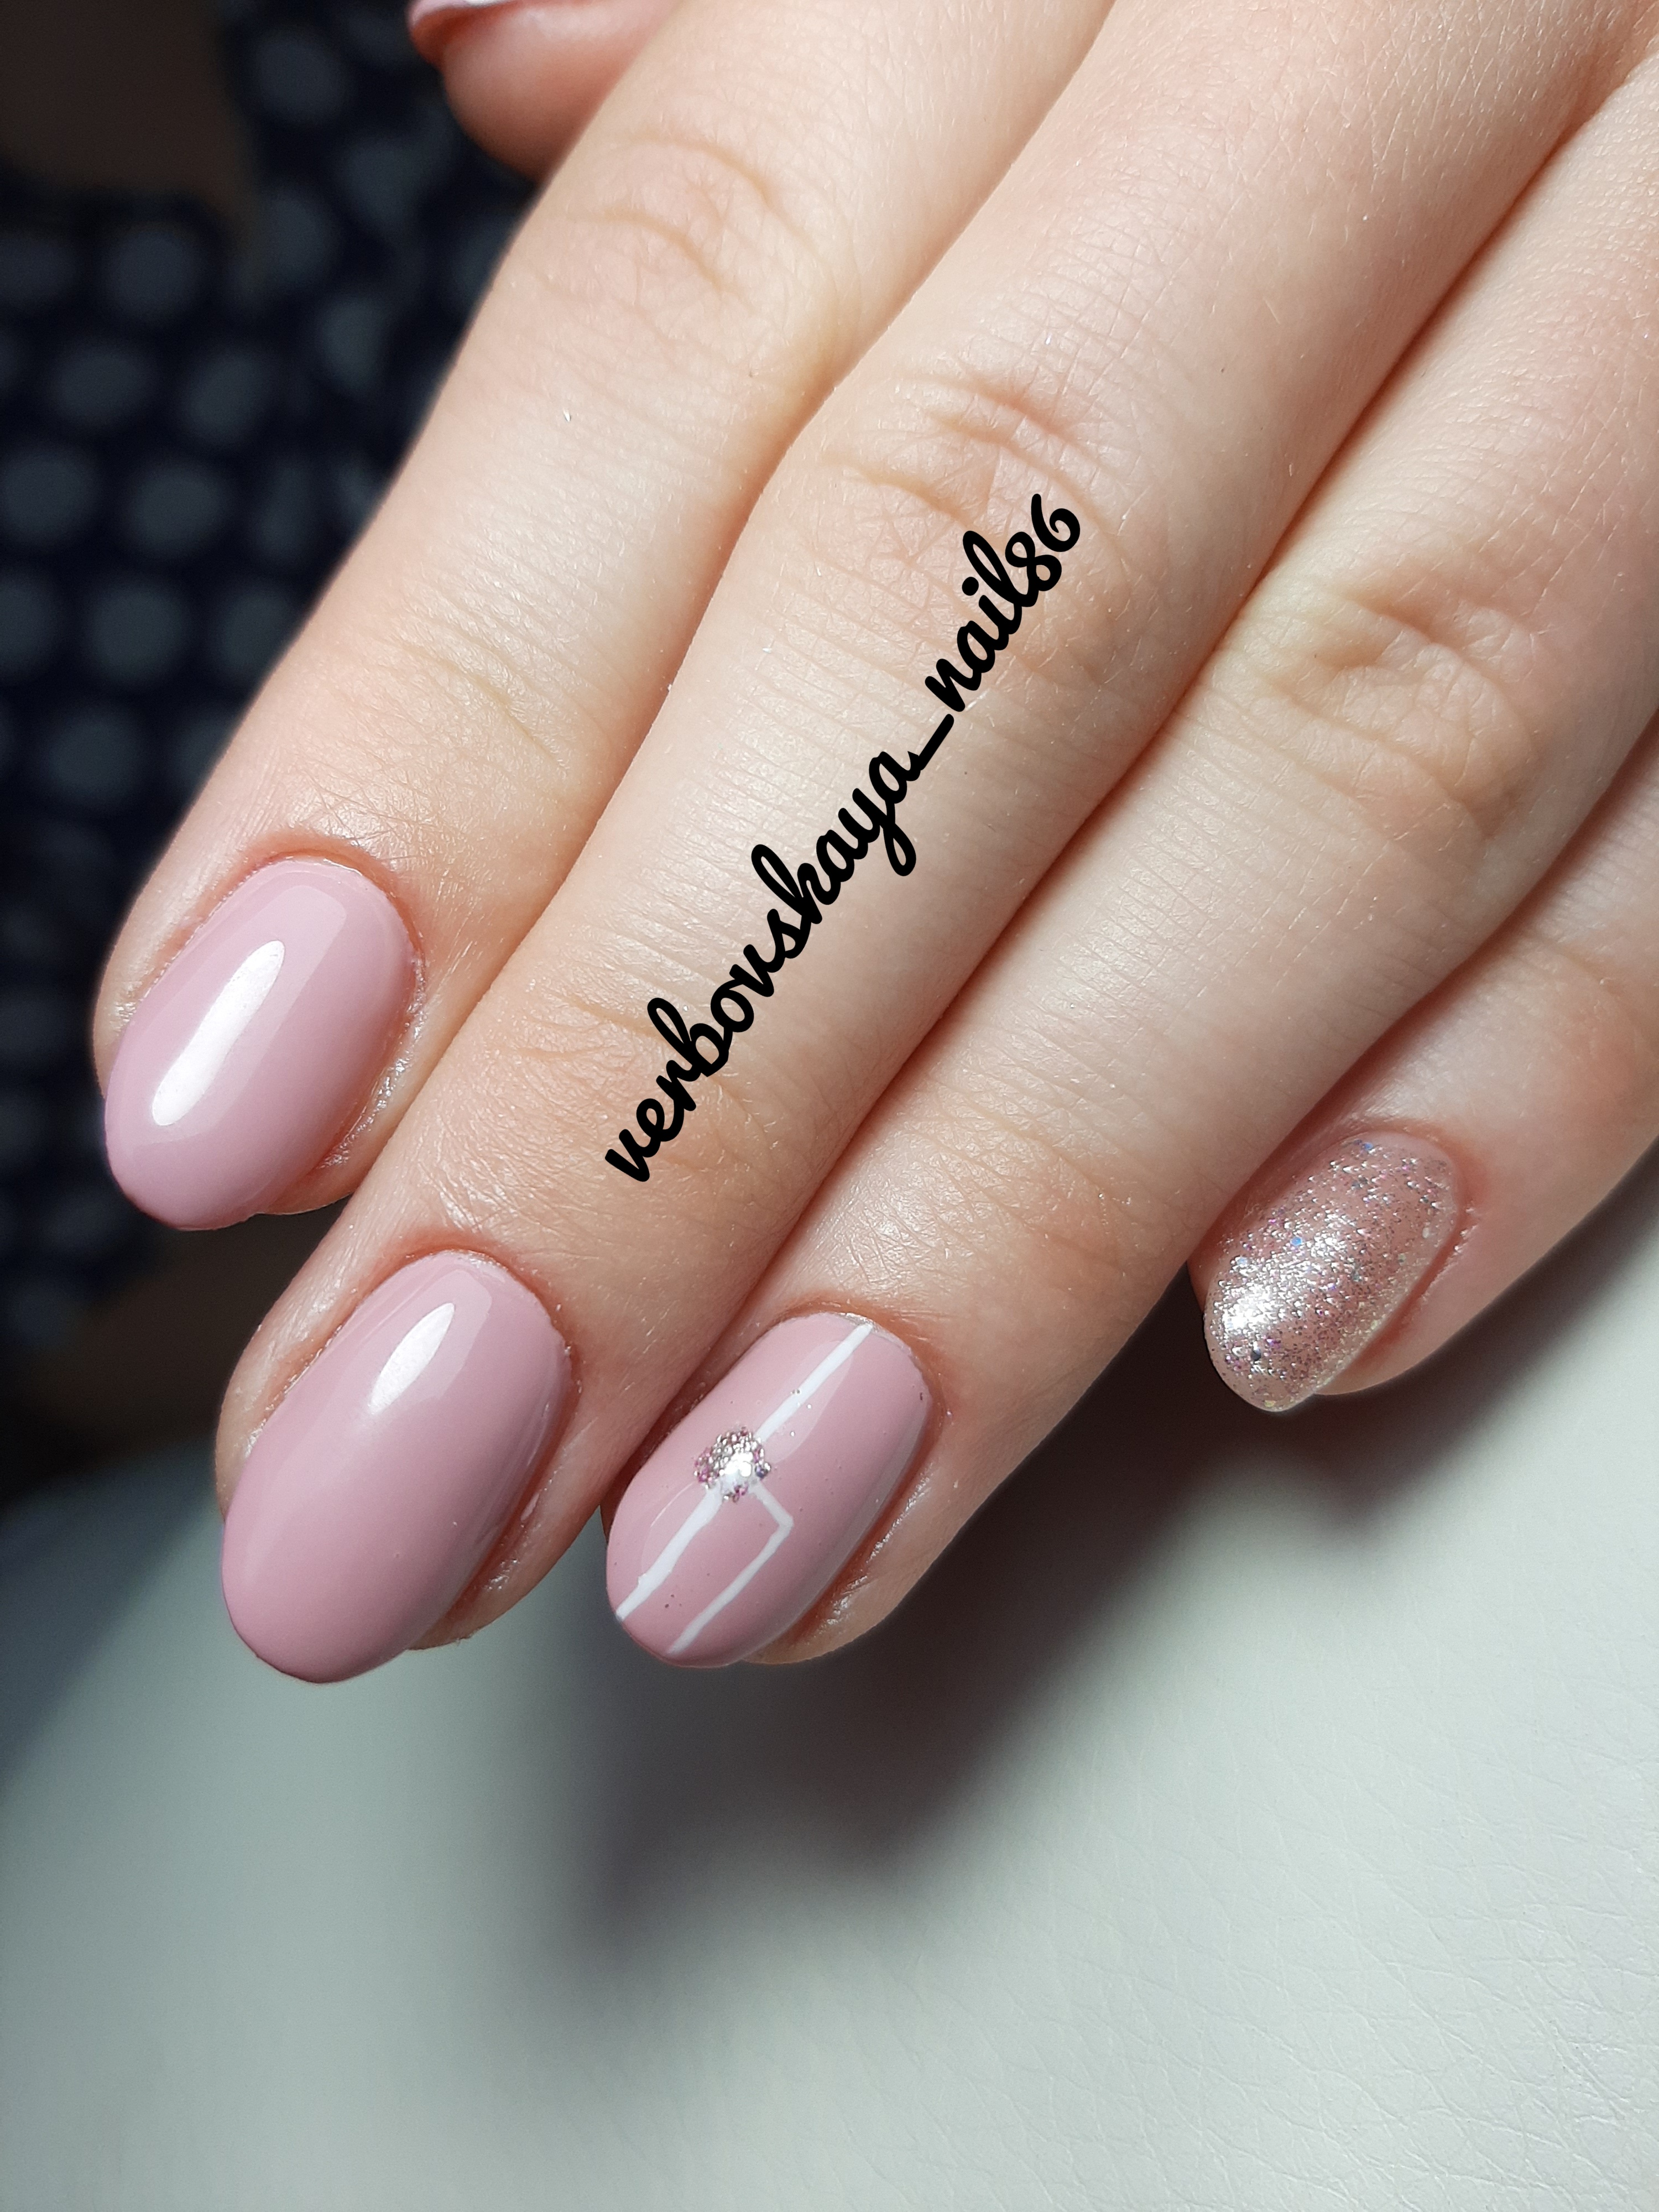 Маникюр с геометрическим рисунком и блестками в розовом цвете на короткие ногти.